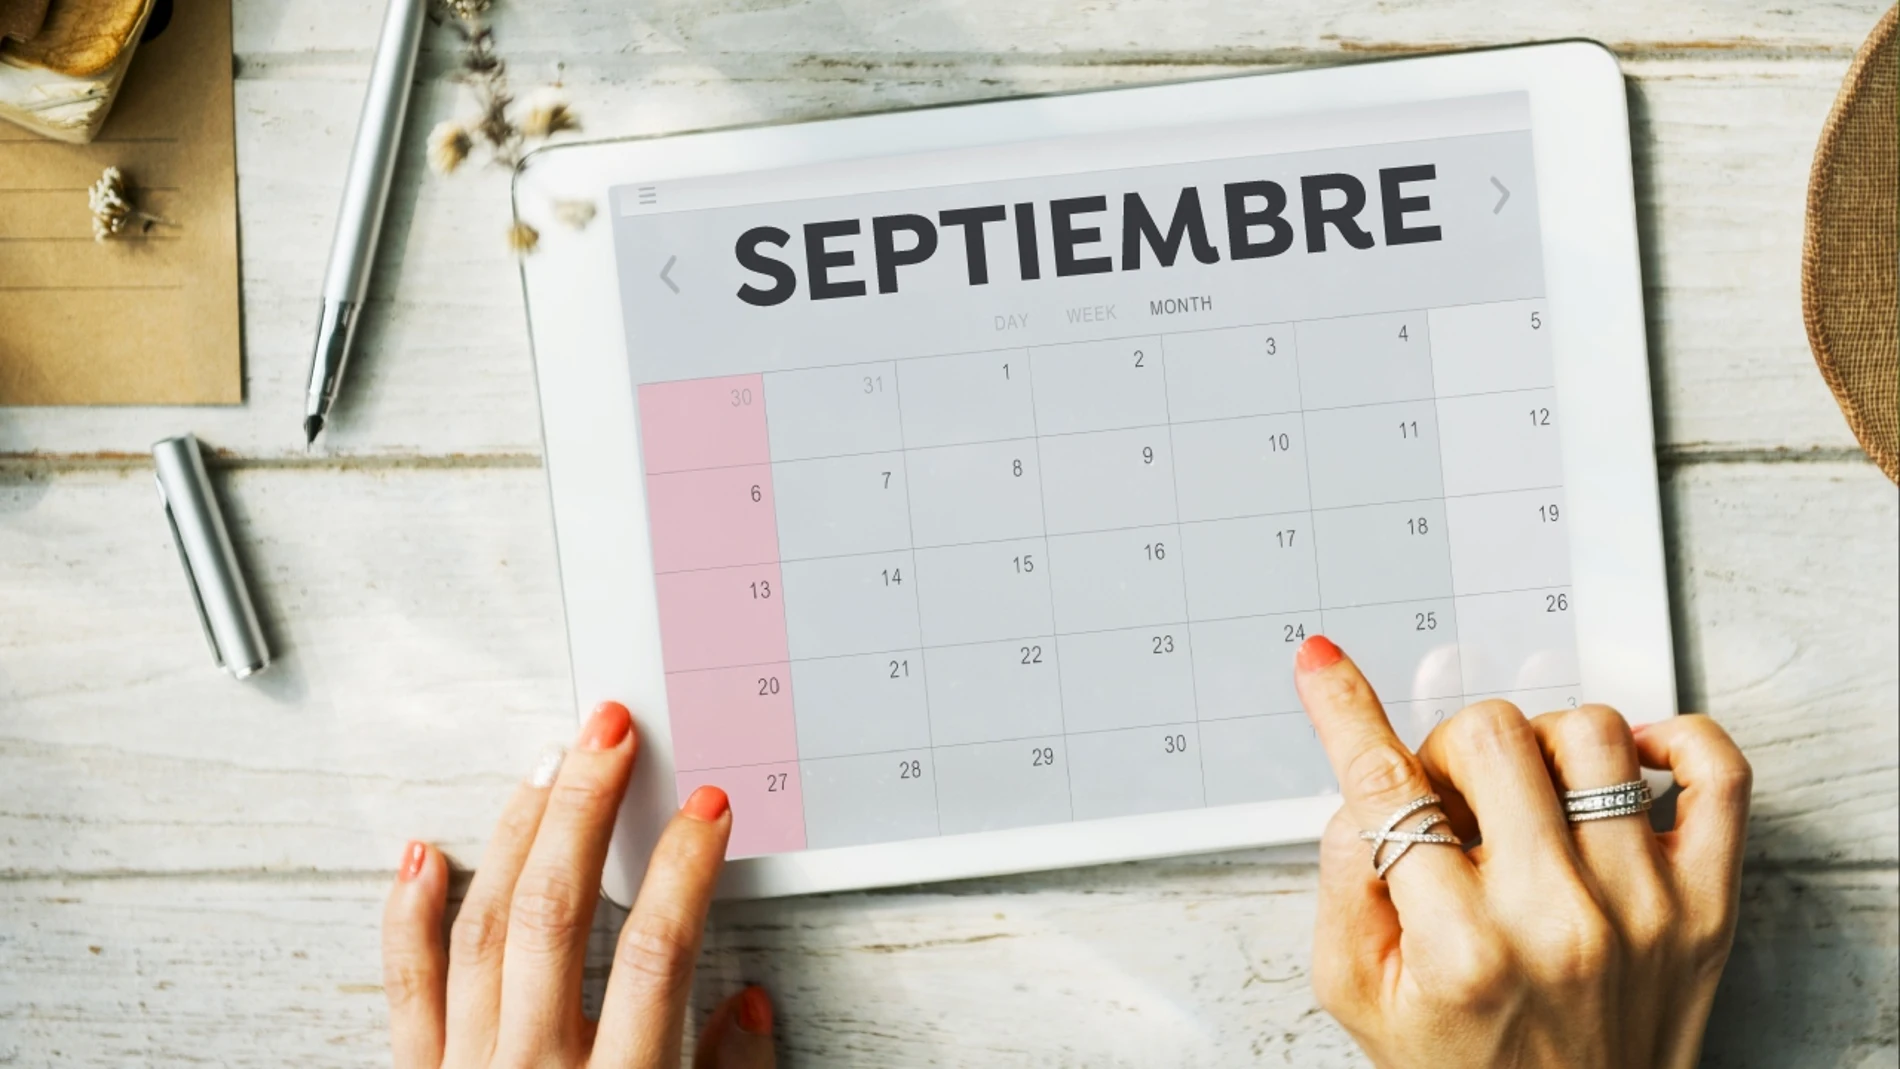 Calendario laboral septiembre 2021: Días festivos y puentes